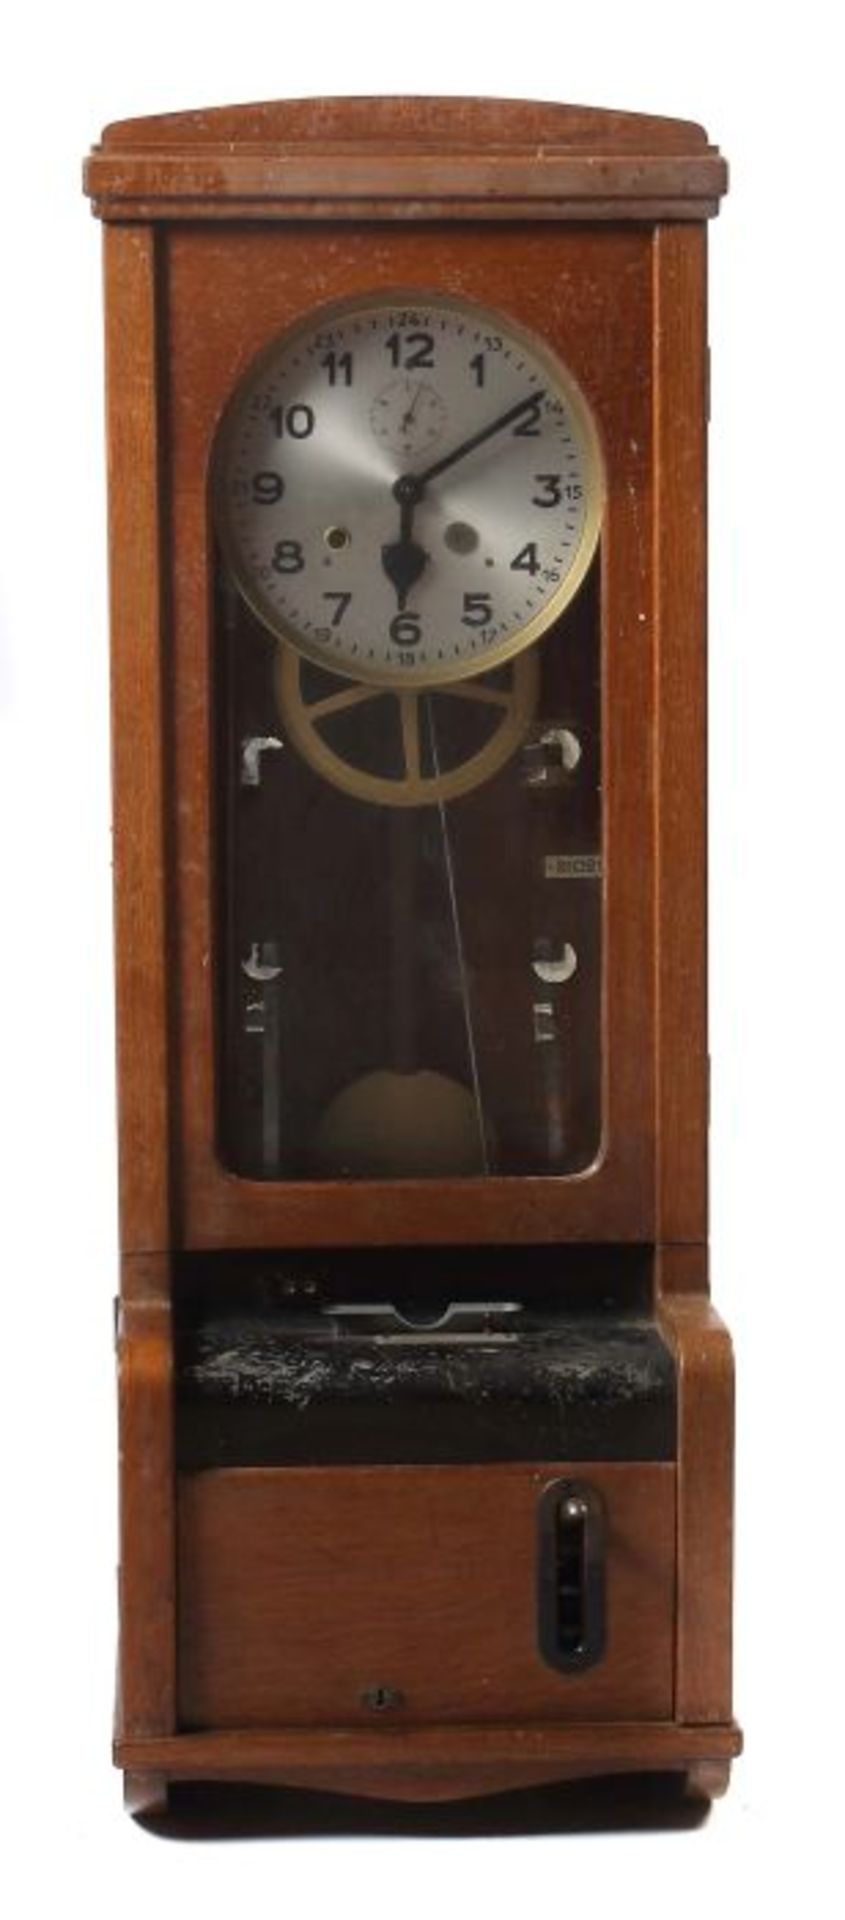 Mutteruhr mit Signal- und Stempelkartenfunktion Wohl 1930er Jahre, elektrische Hauptuhr und